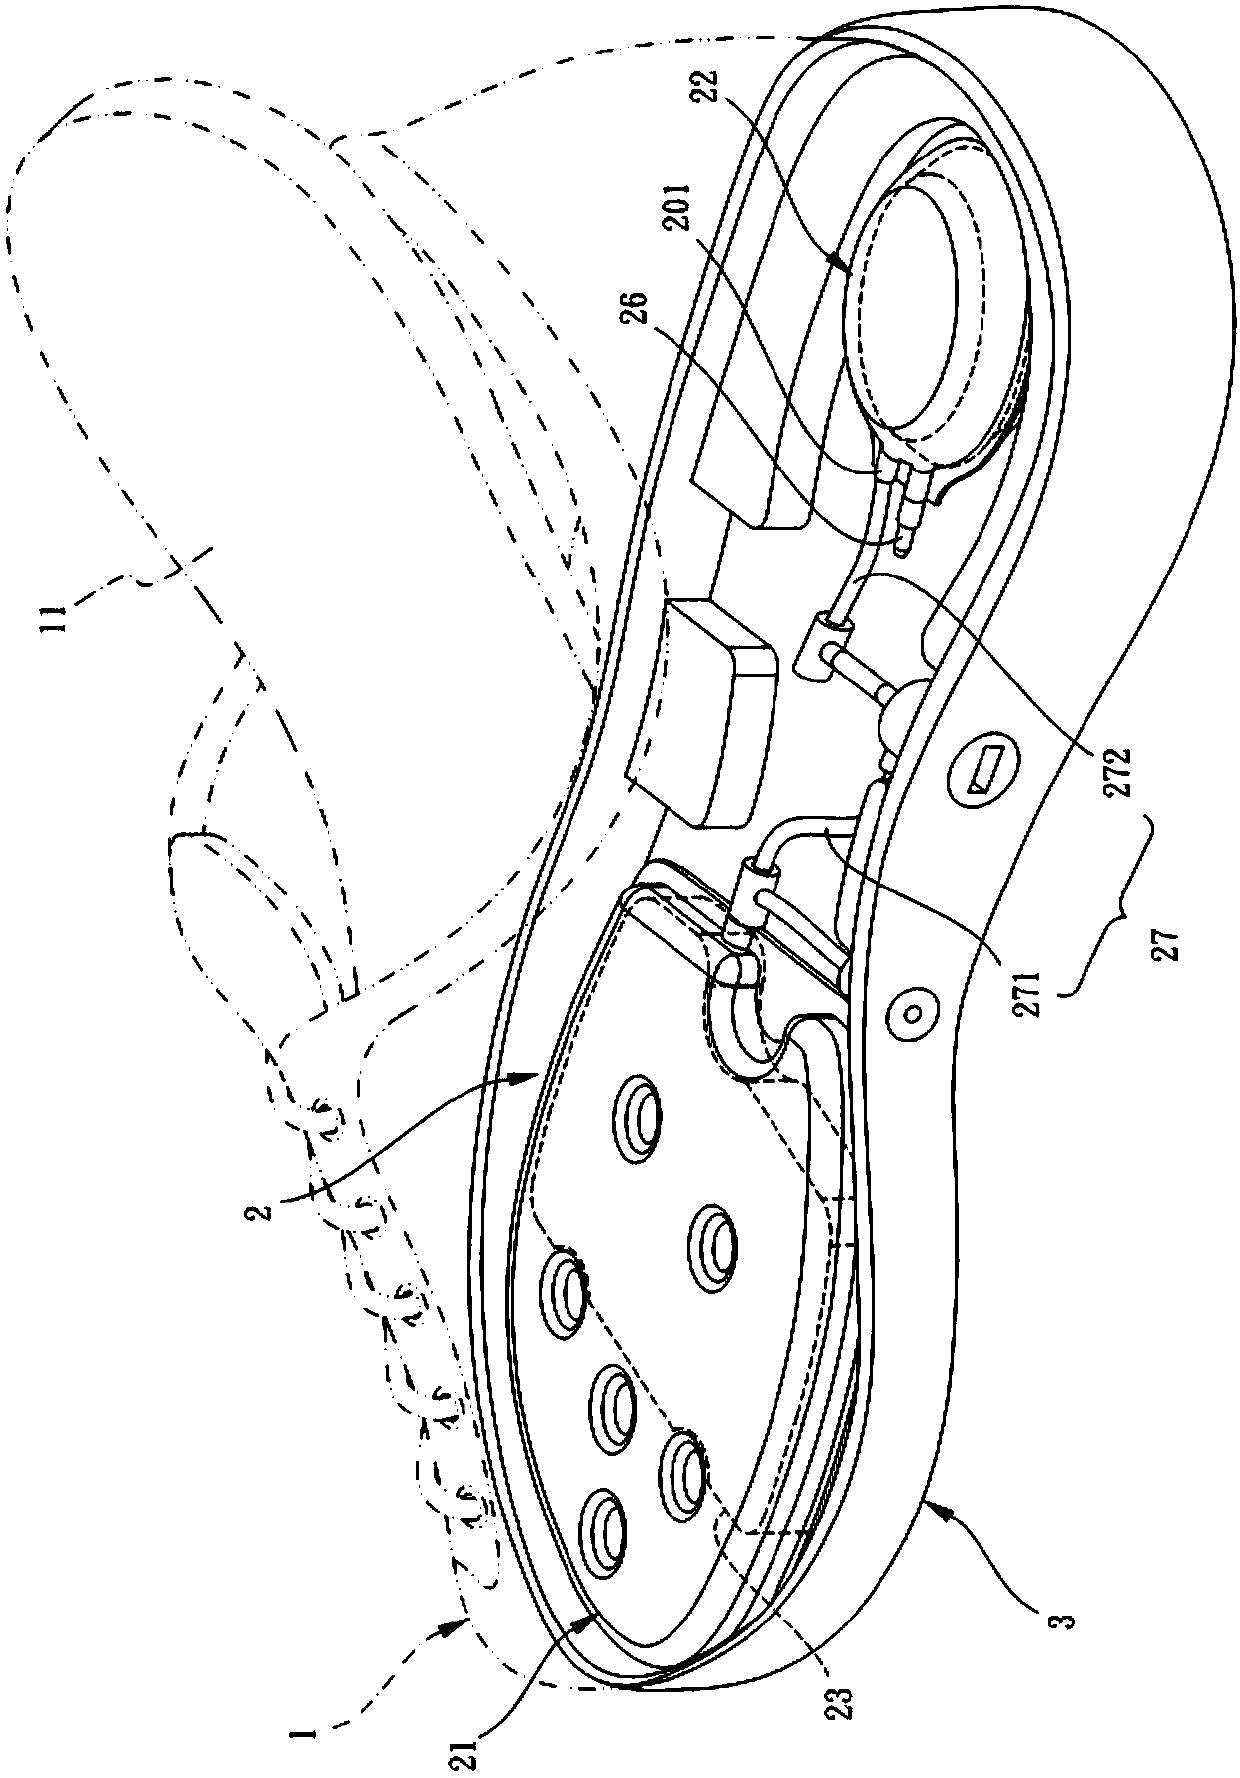 Air cushion shoe device